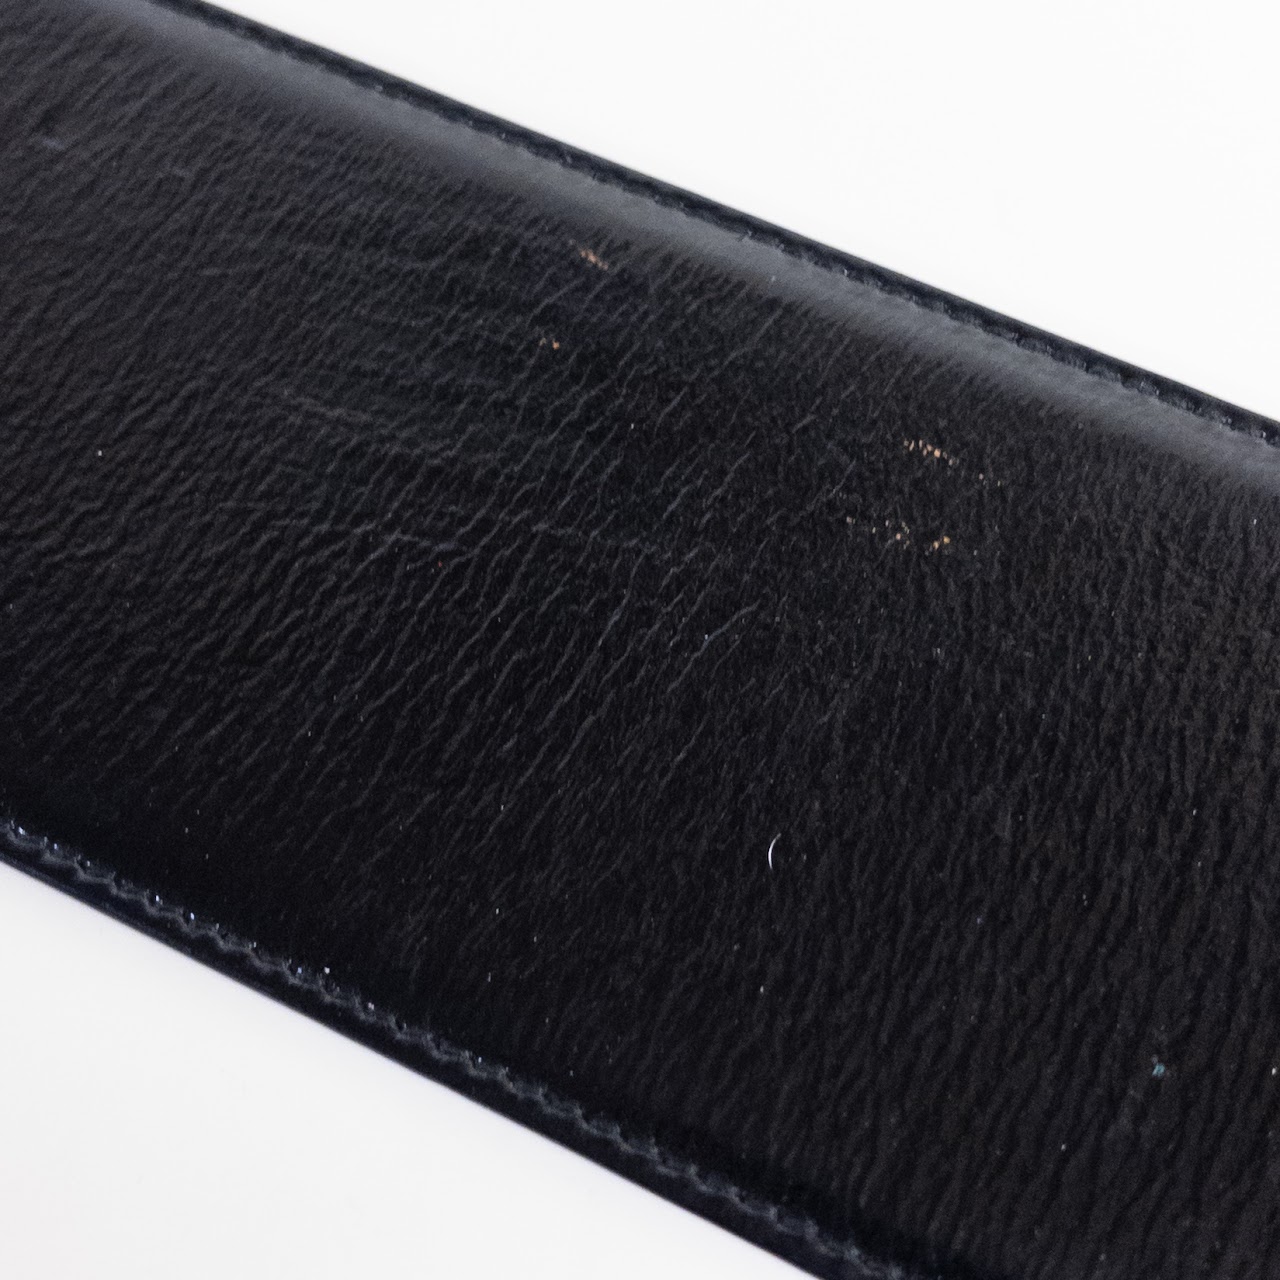 Yves Saint Laurent Patent Leather Belt